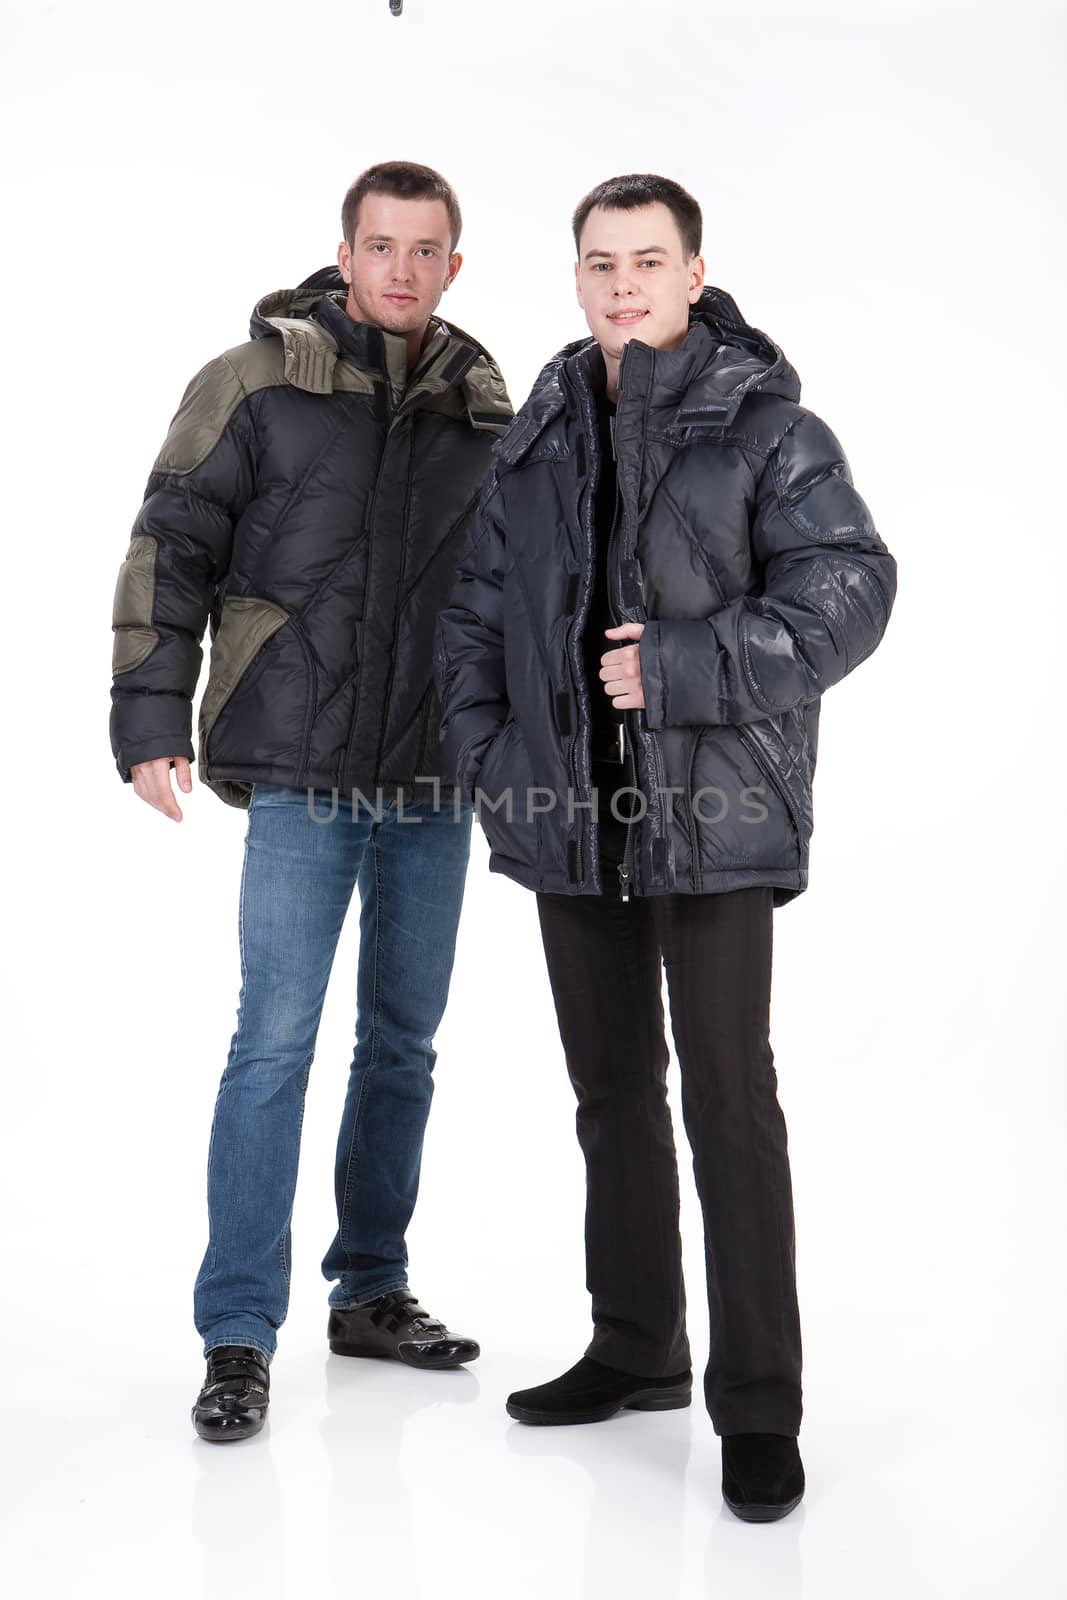 Two Men In Winter Clothing by Fotoskat